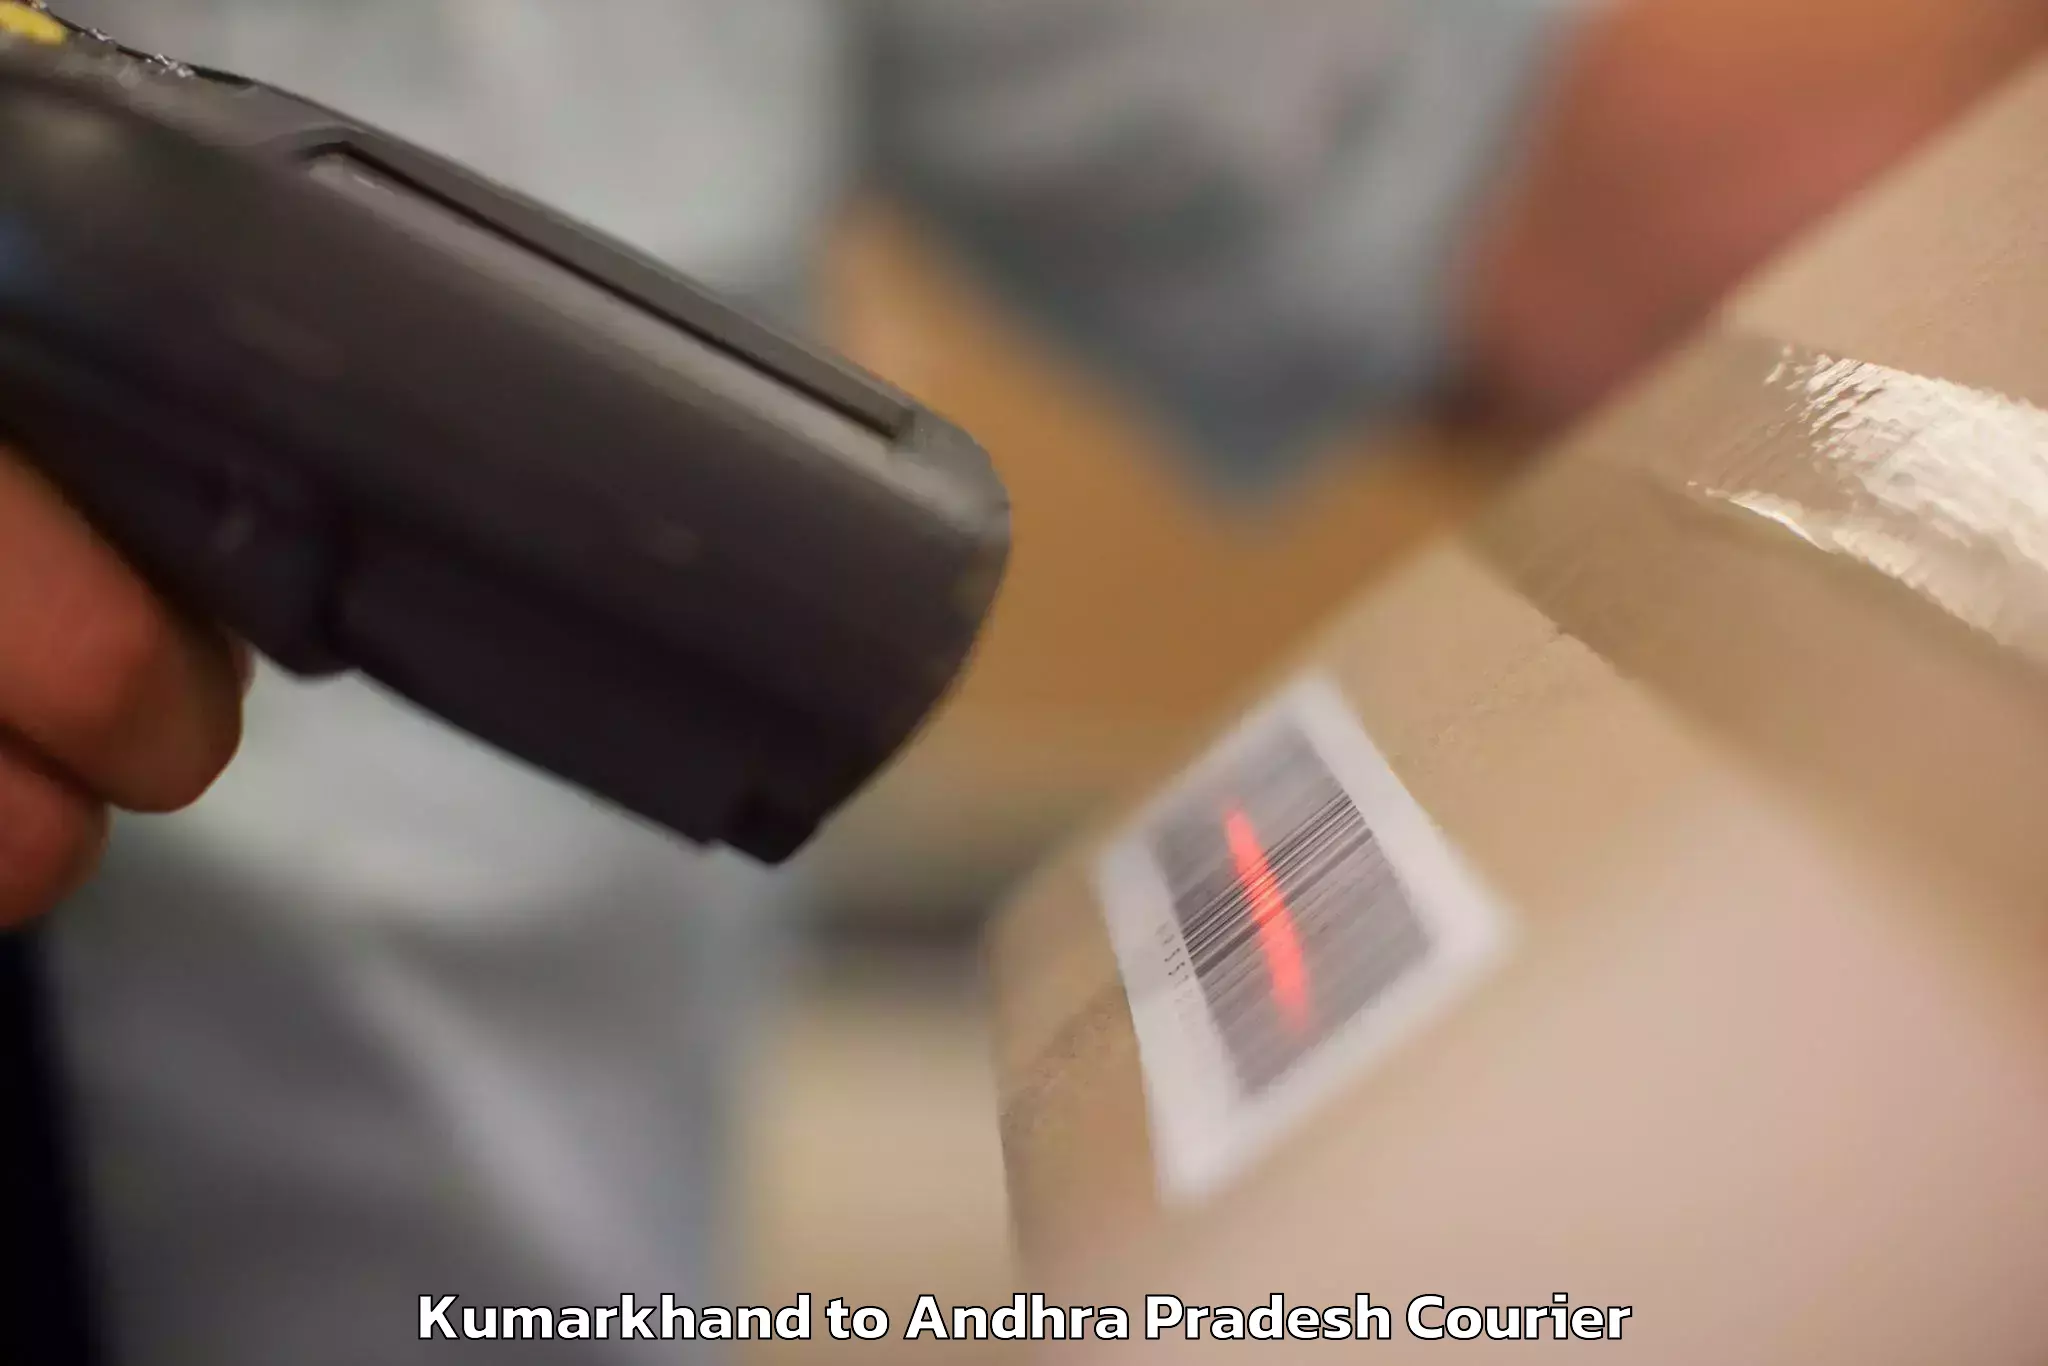 Luggage shipping estimate Kumarkhand to Dhone